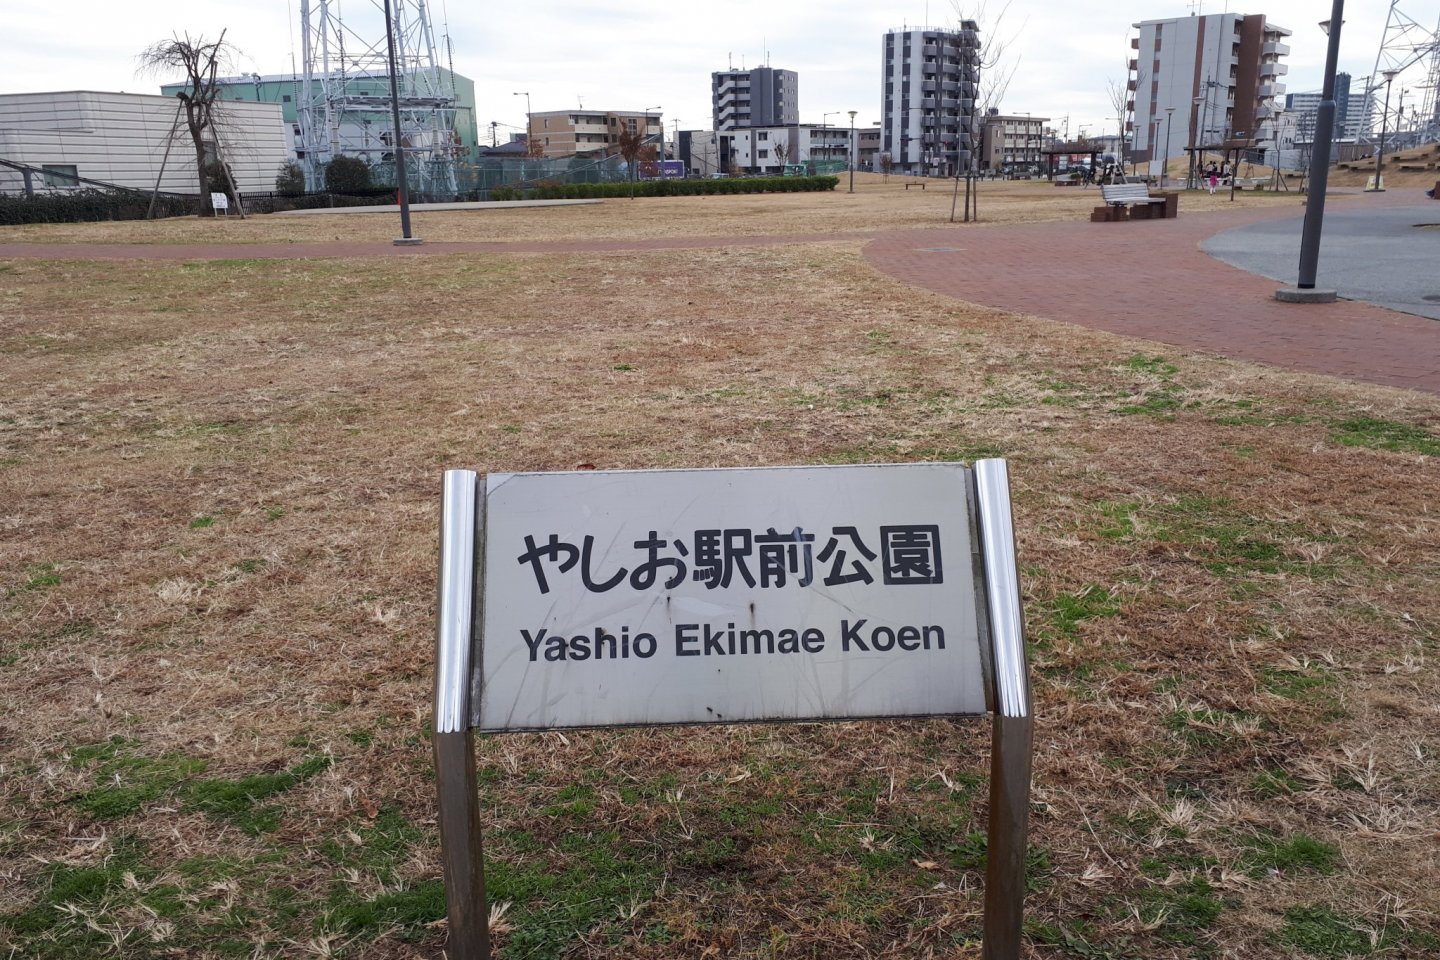 Park signage